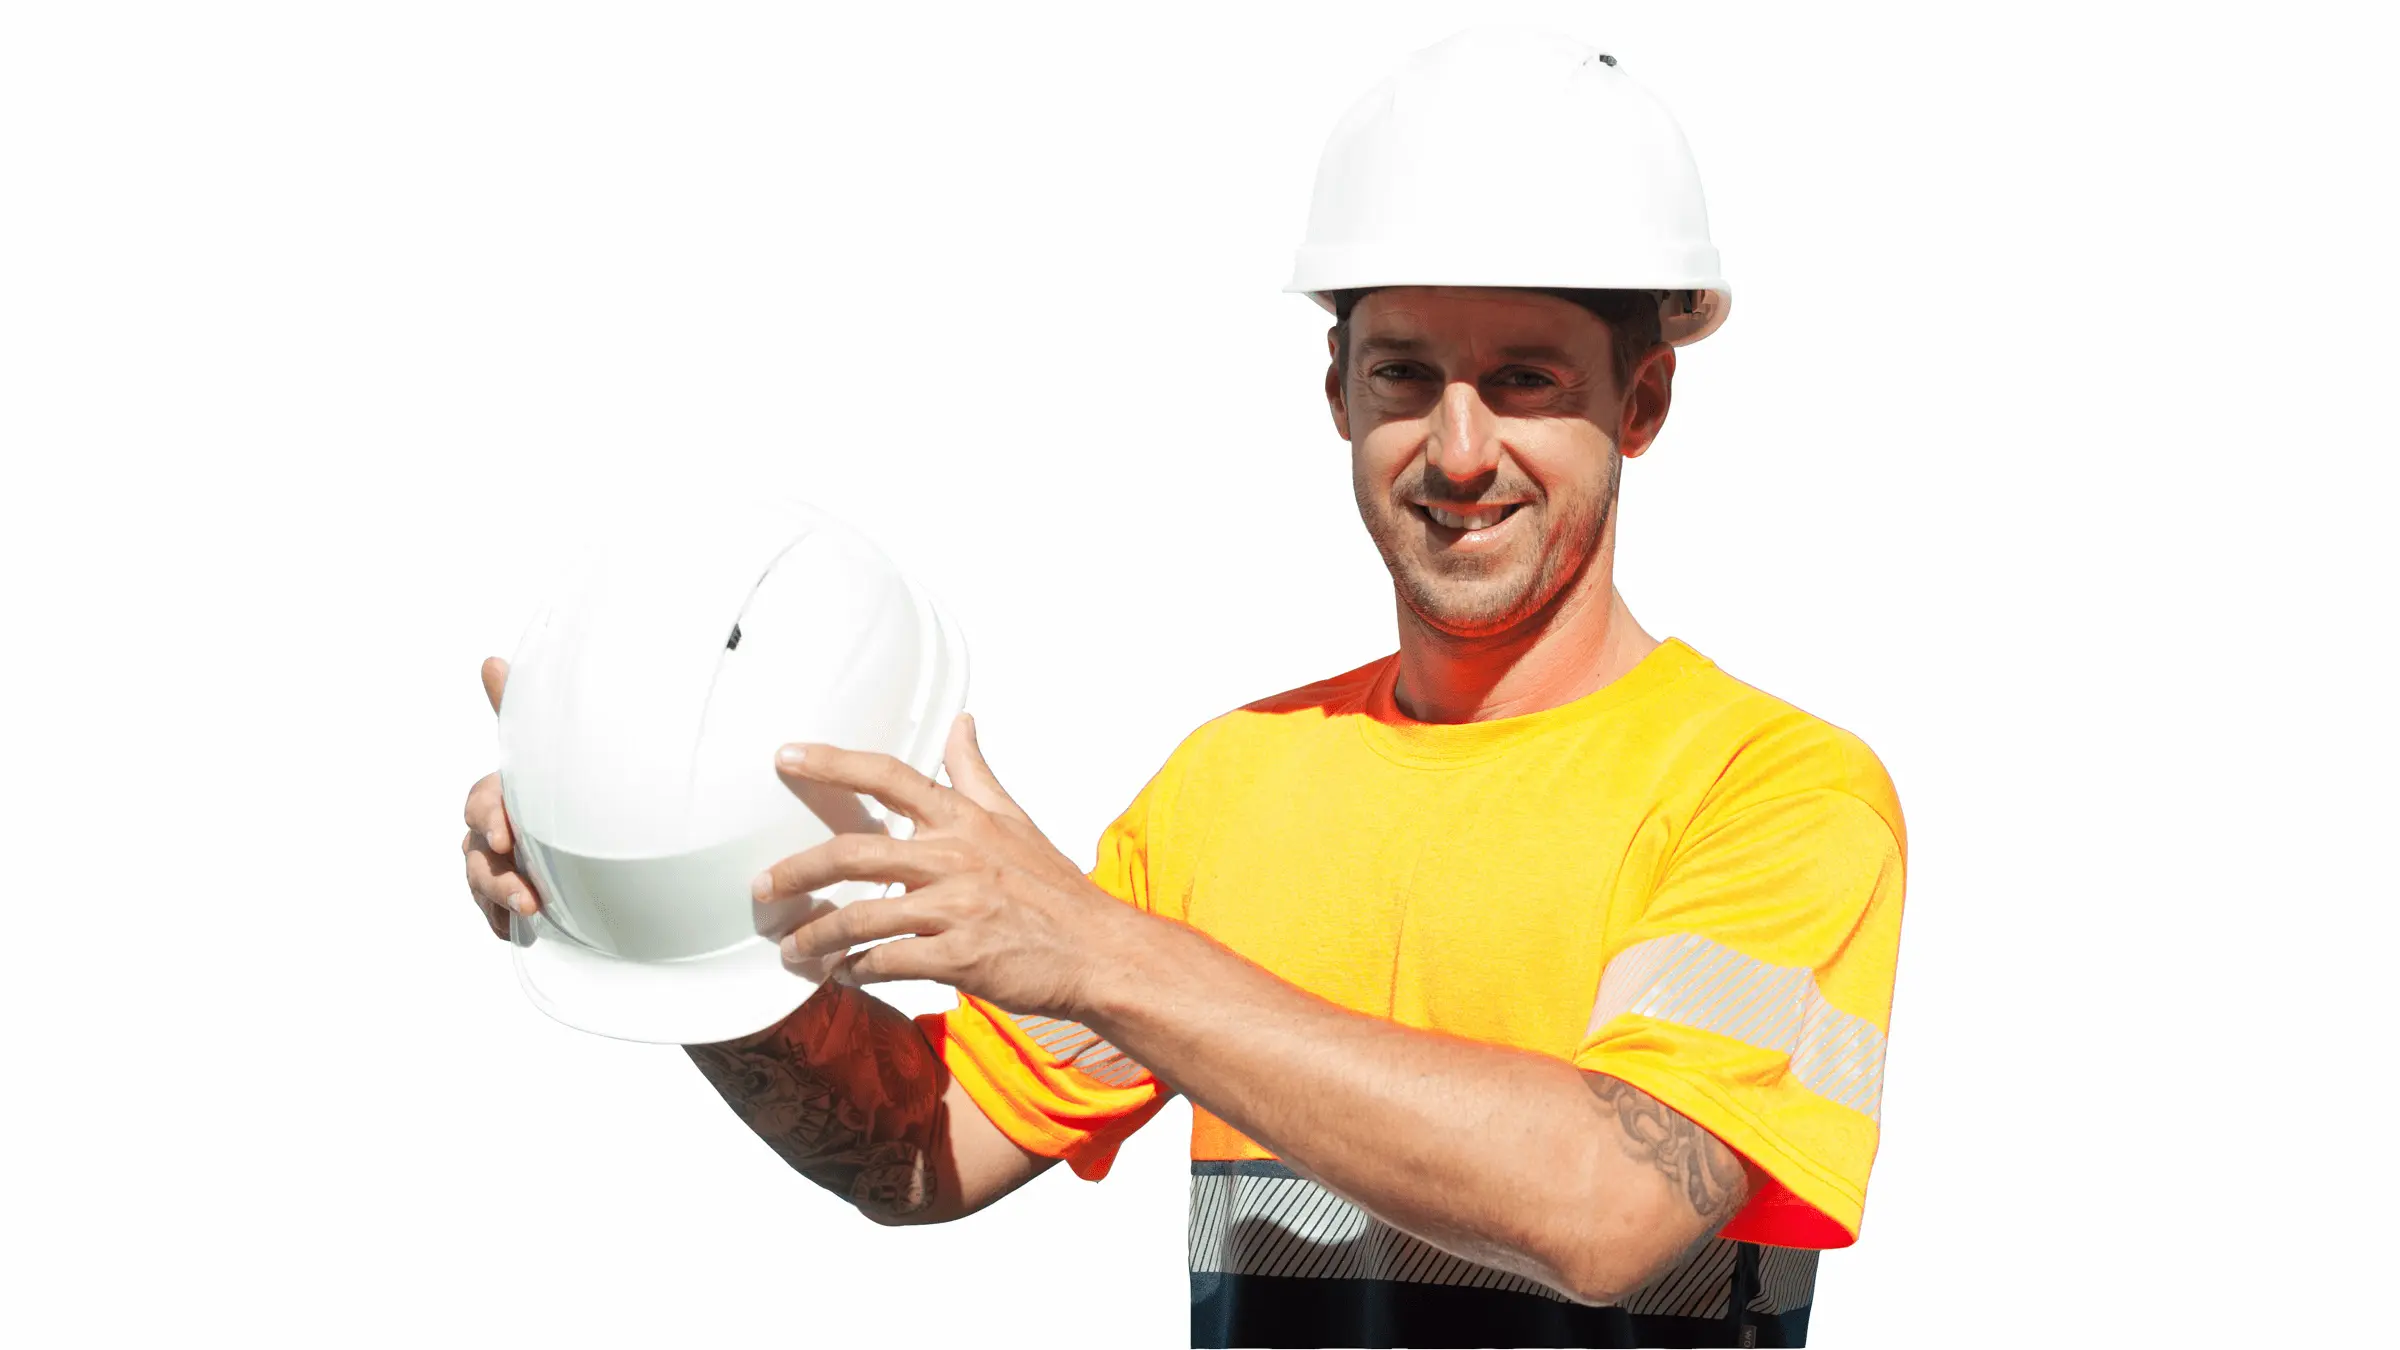 Amplio catálogo de cascos de protección para la cabeza, gorras casco,l cascos con pantalla protectora, ... para la protección de los trabajadores en la empresa